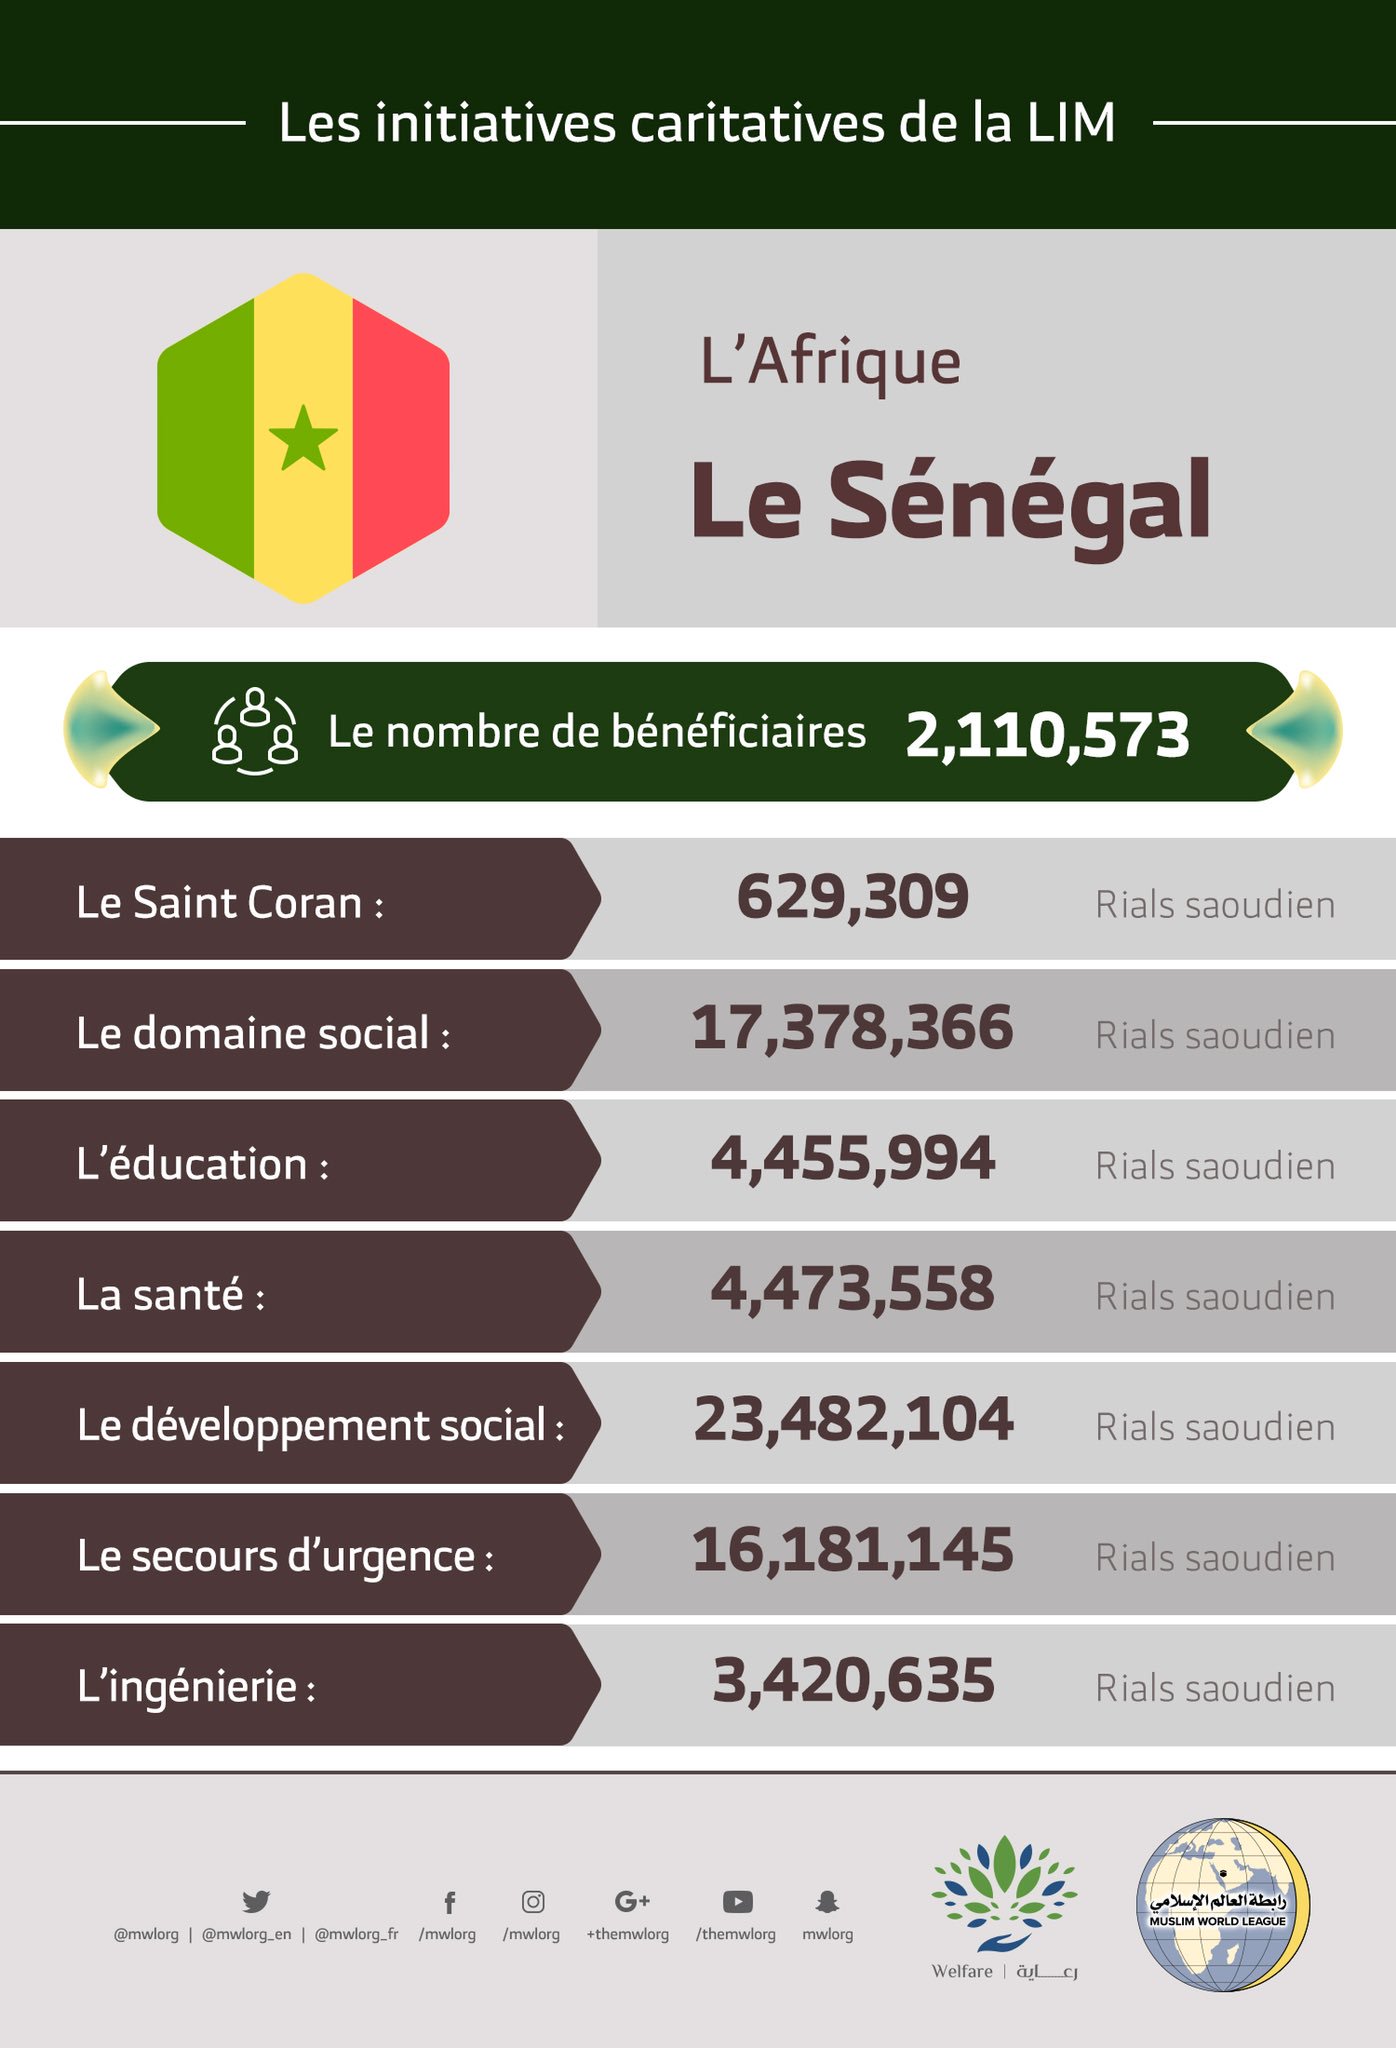 Le nombre total de bénéficiaires au Sénégal des initiatives de la Ligue Islamique Mondiale s’élève à 2 110 573 personnes